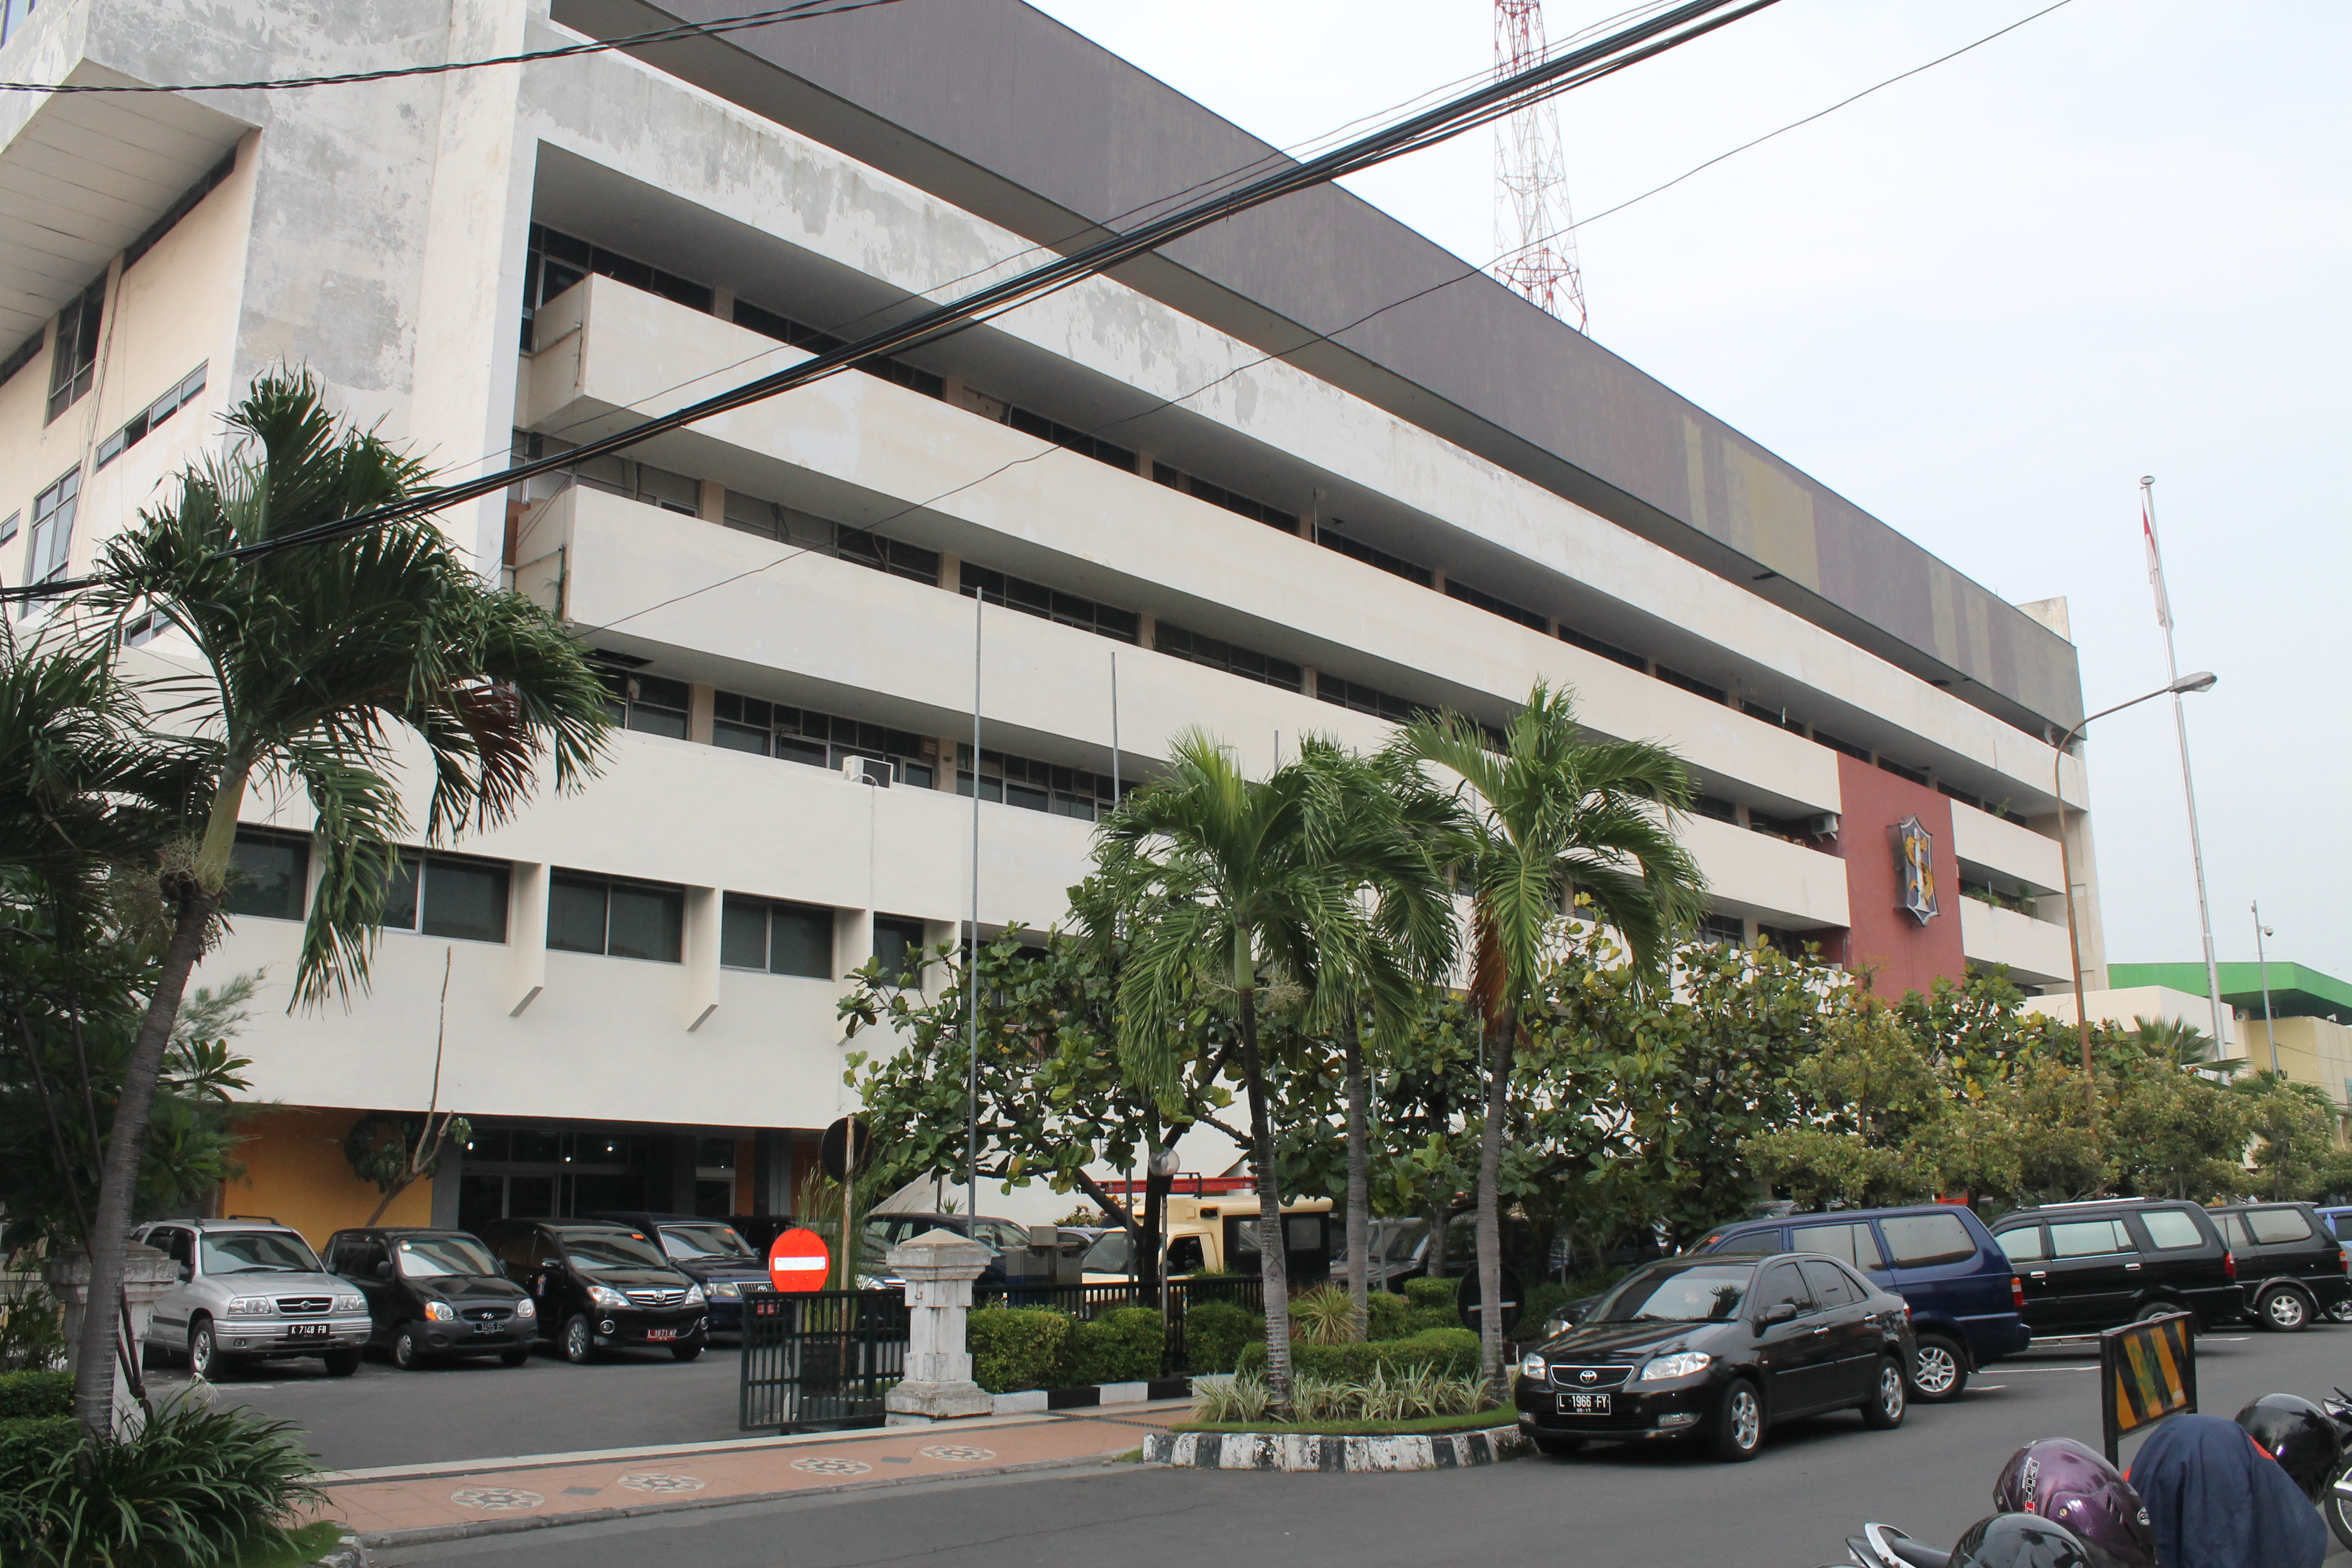 Balai Kota Surabaya Jalan Jimerto alias Graha Sawunggaling dari arah barat daya.